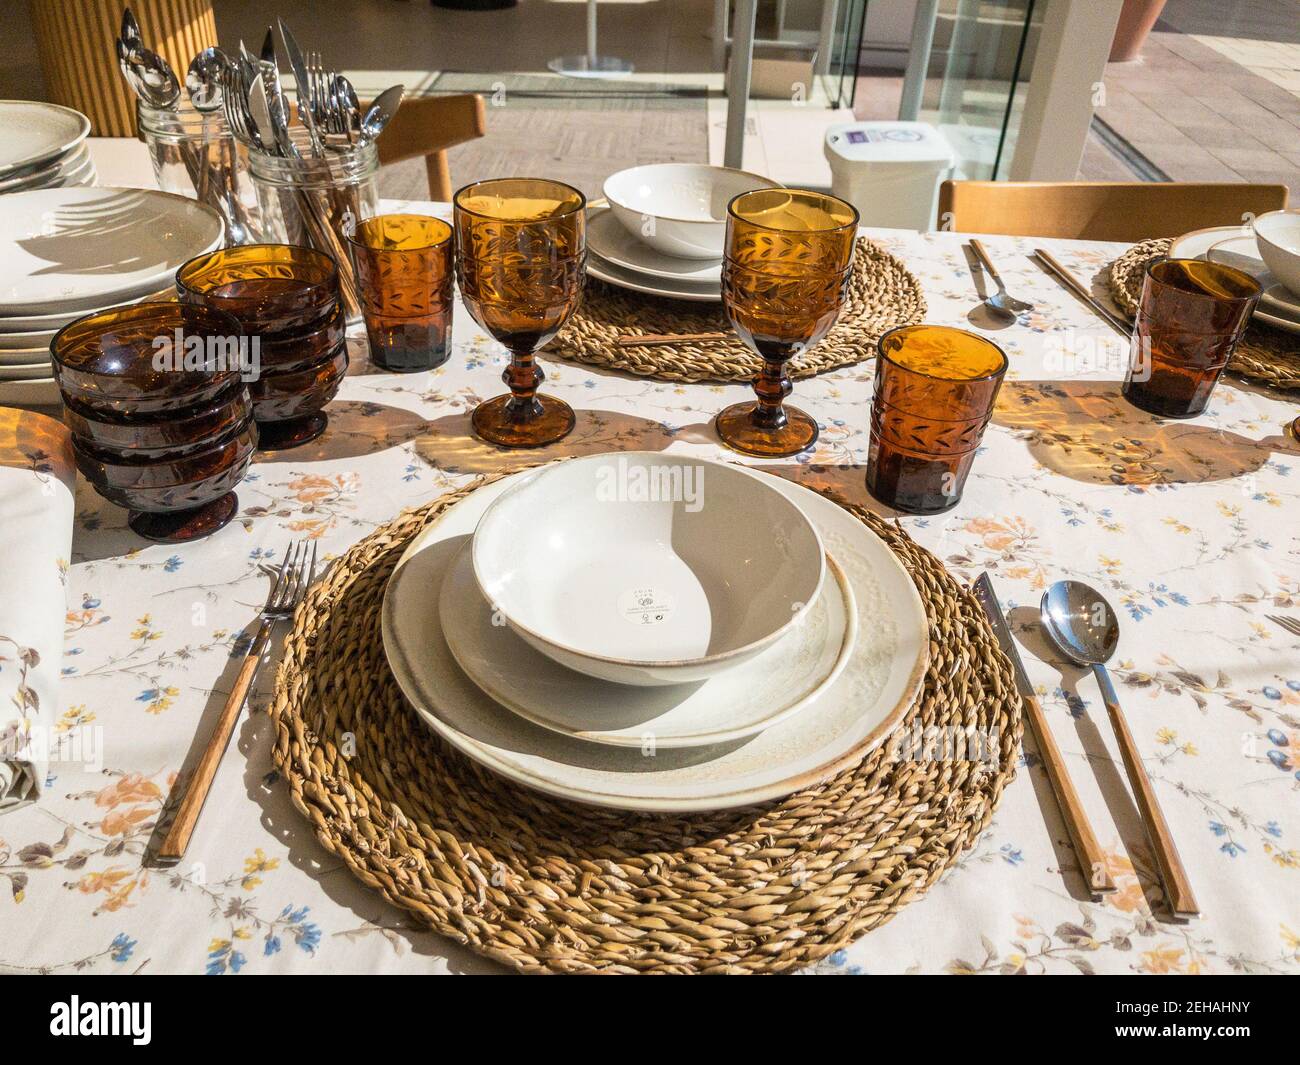 Draufsicht zum Aufstellen des Tisches mit Vintage-Keramikgeschirr Auf floralem Muster Geschirr sonnigen Tag Stockfoto